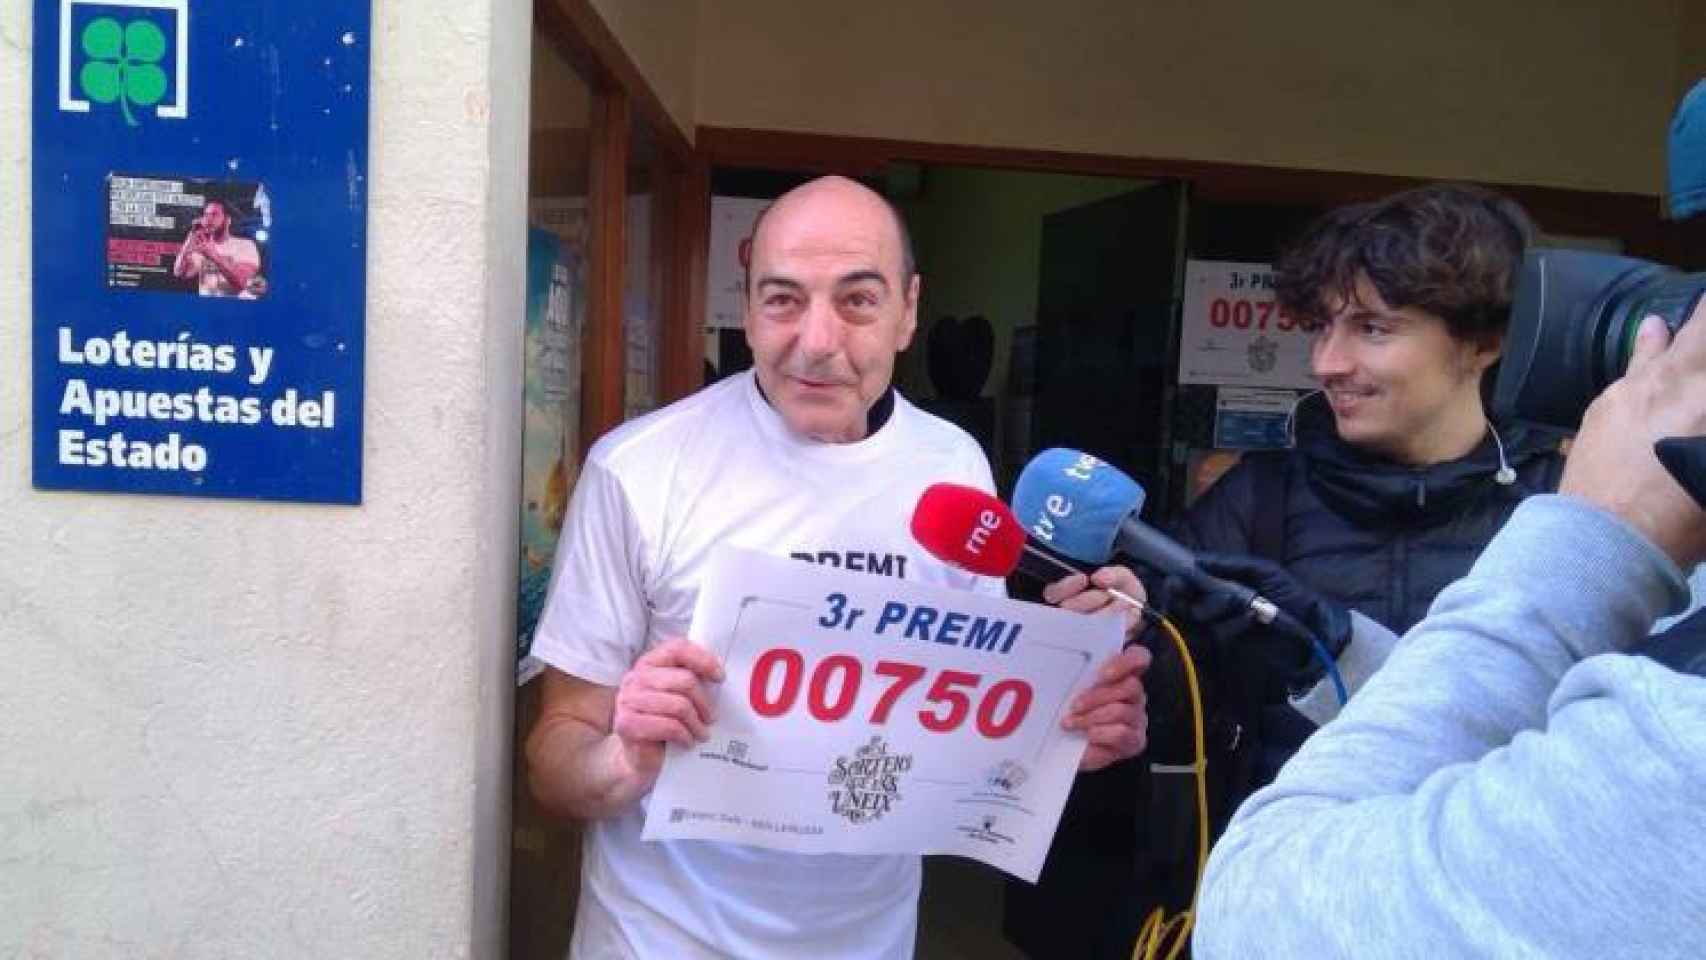 El propietario de la administración de lotería de Mollerussa (Lleida) que ha repartido 36 series del tercer premio